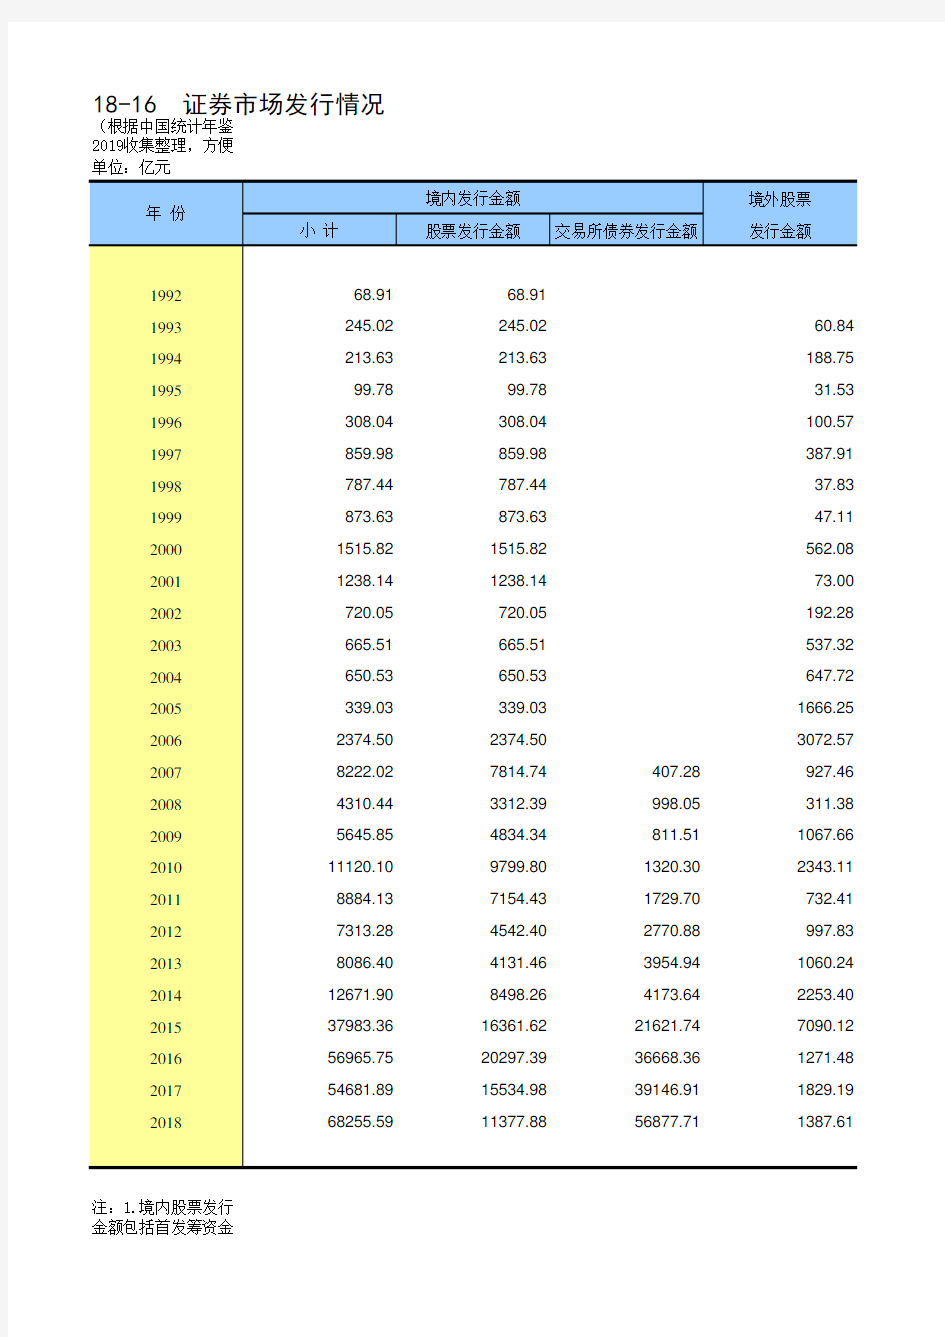 18-16 中国统计年鉴数据处理：股票发行量和筹资额(仅全国指标,便于1992-2018多年数据分析对比)